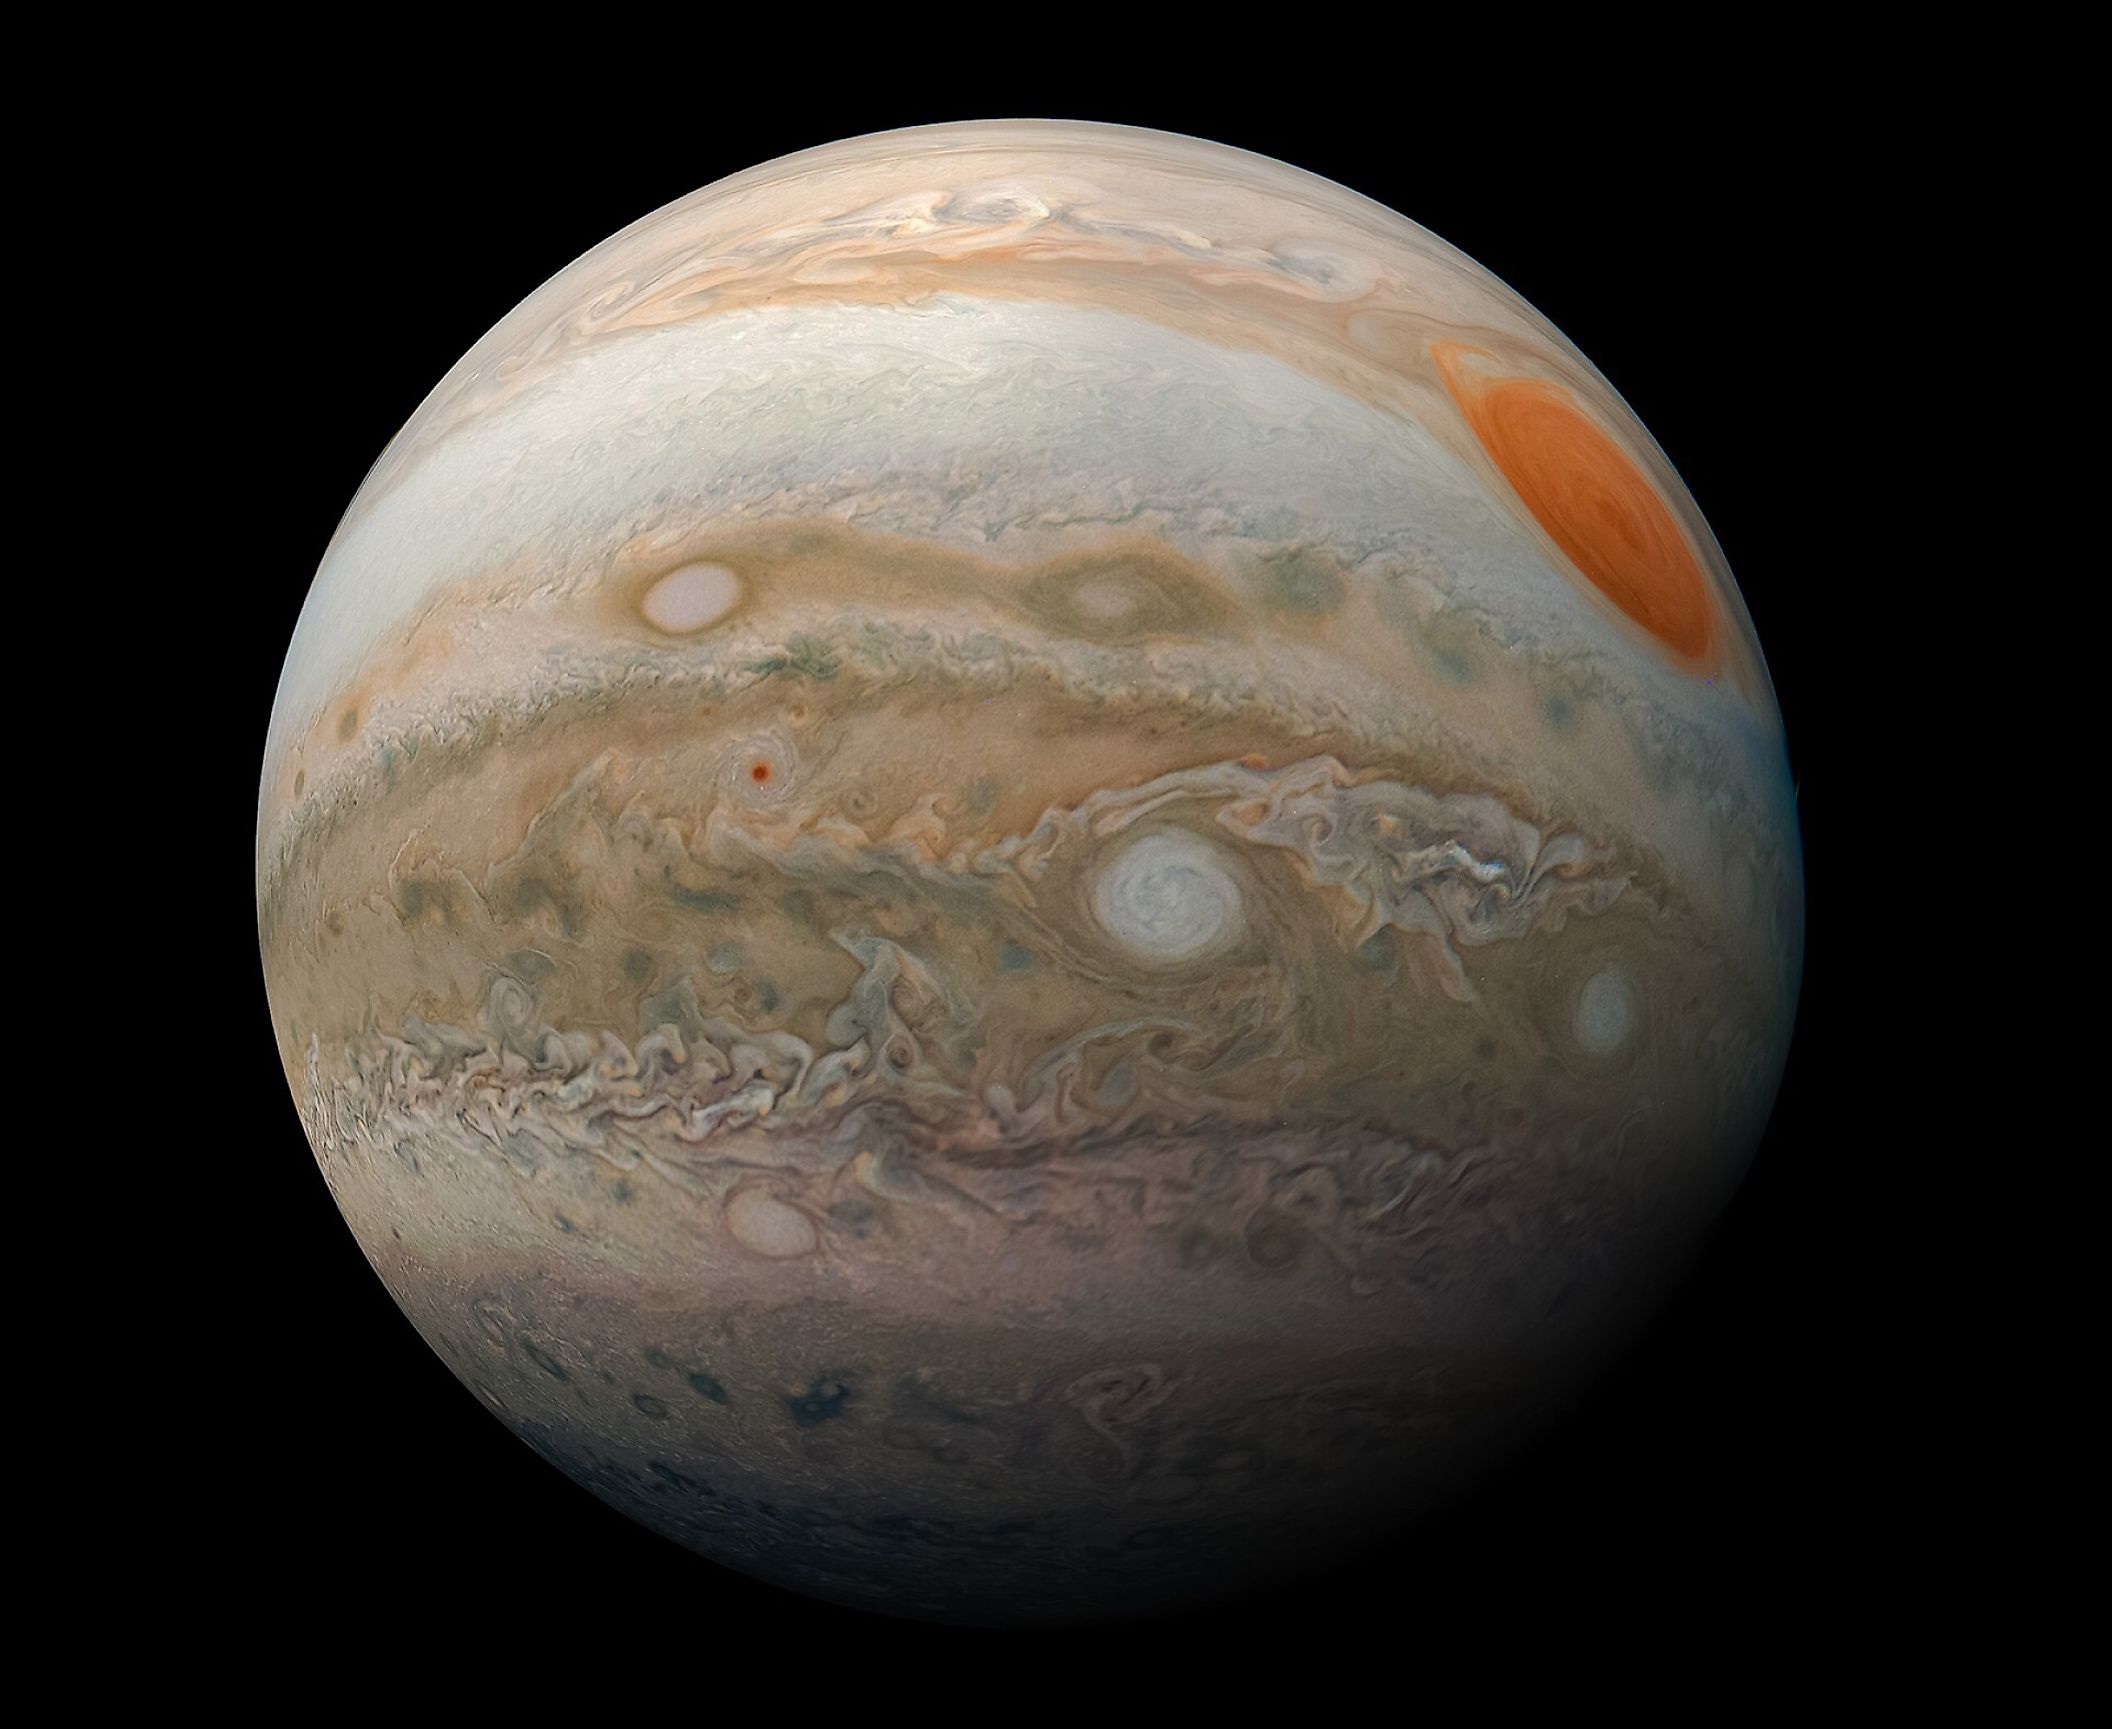 Image of Jupiter taken by the Juno spacecraft. Image credit: NASA